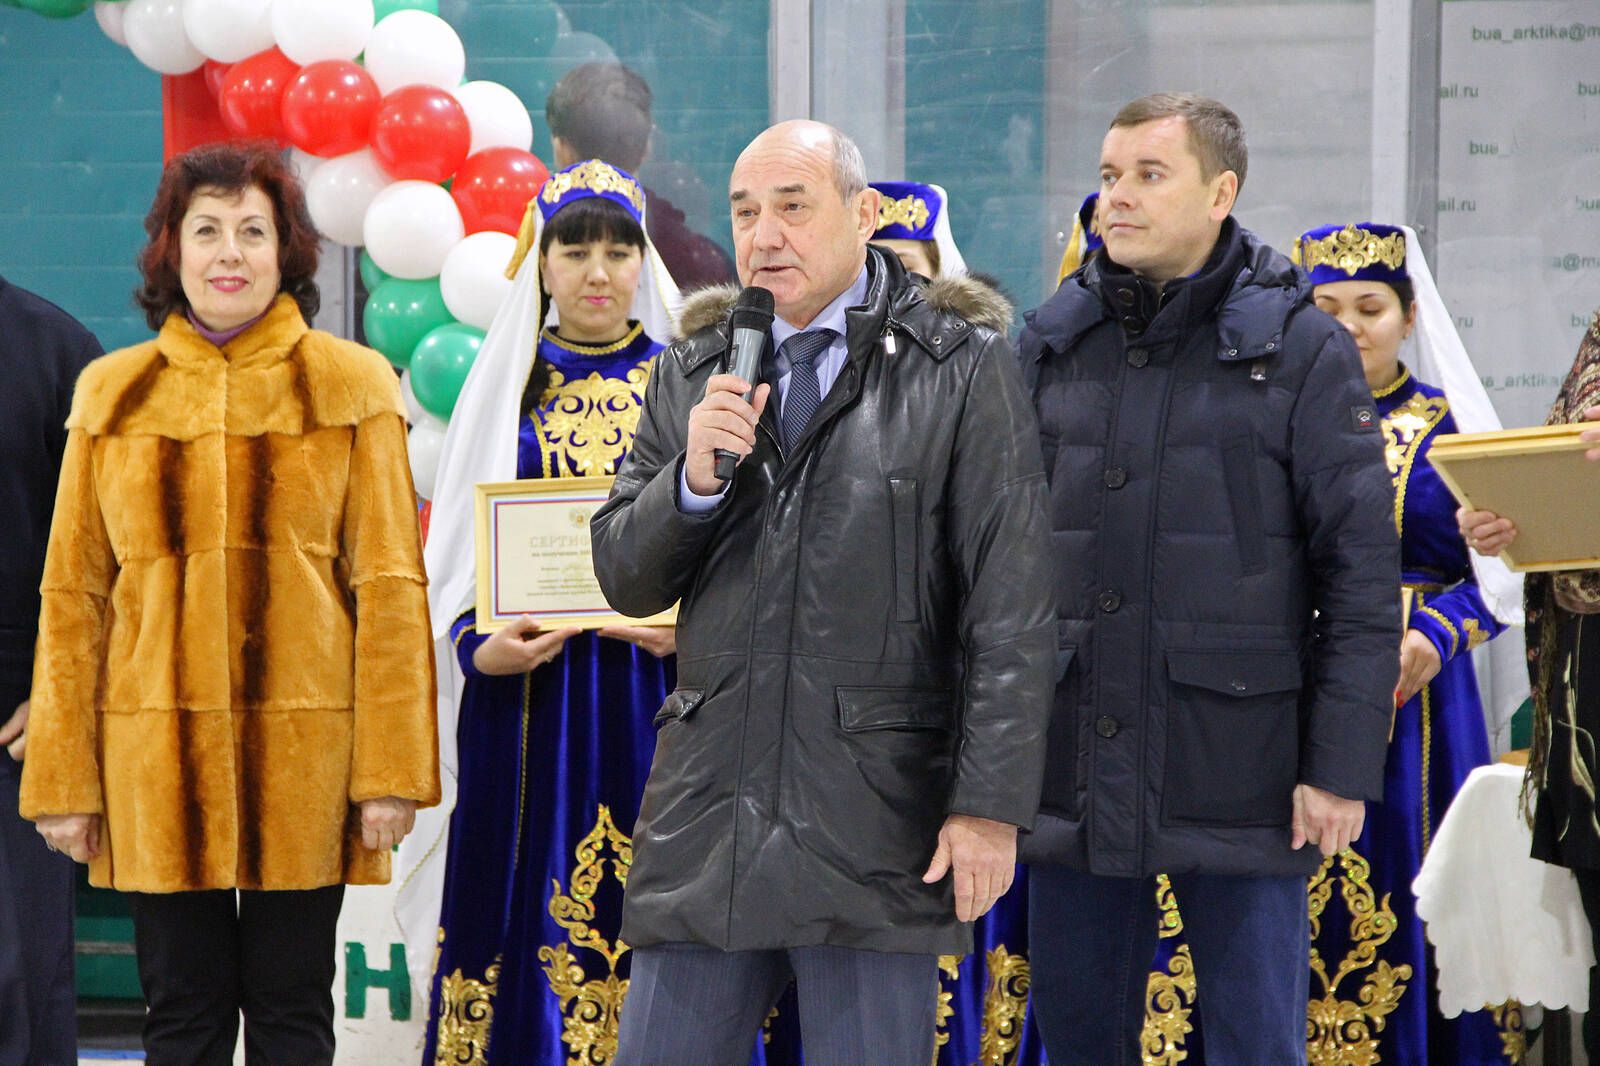 Состоялось торжественное закрытие Республиканского финала Всероссийских соревнований юных хоккеистов клуба "Золотая шайба"